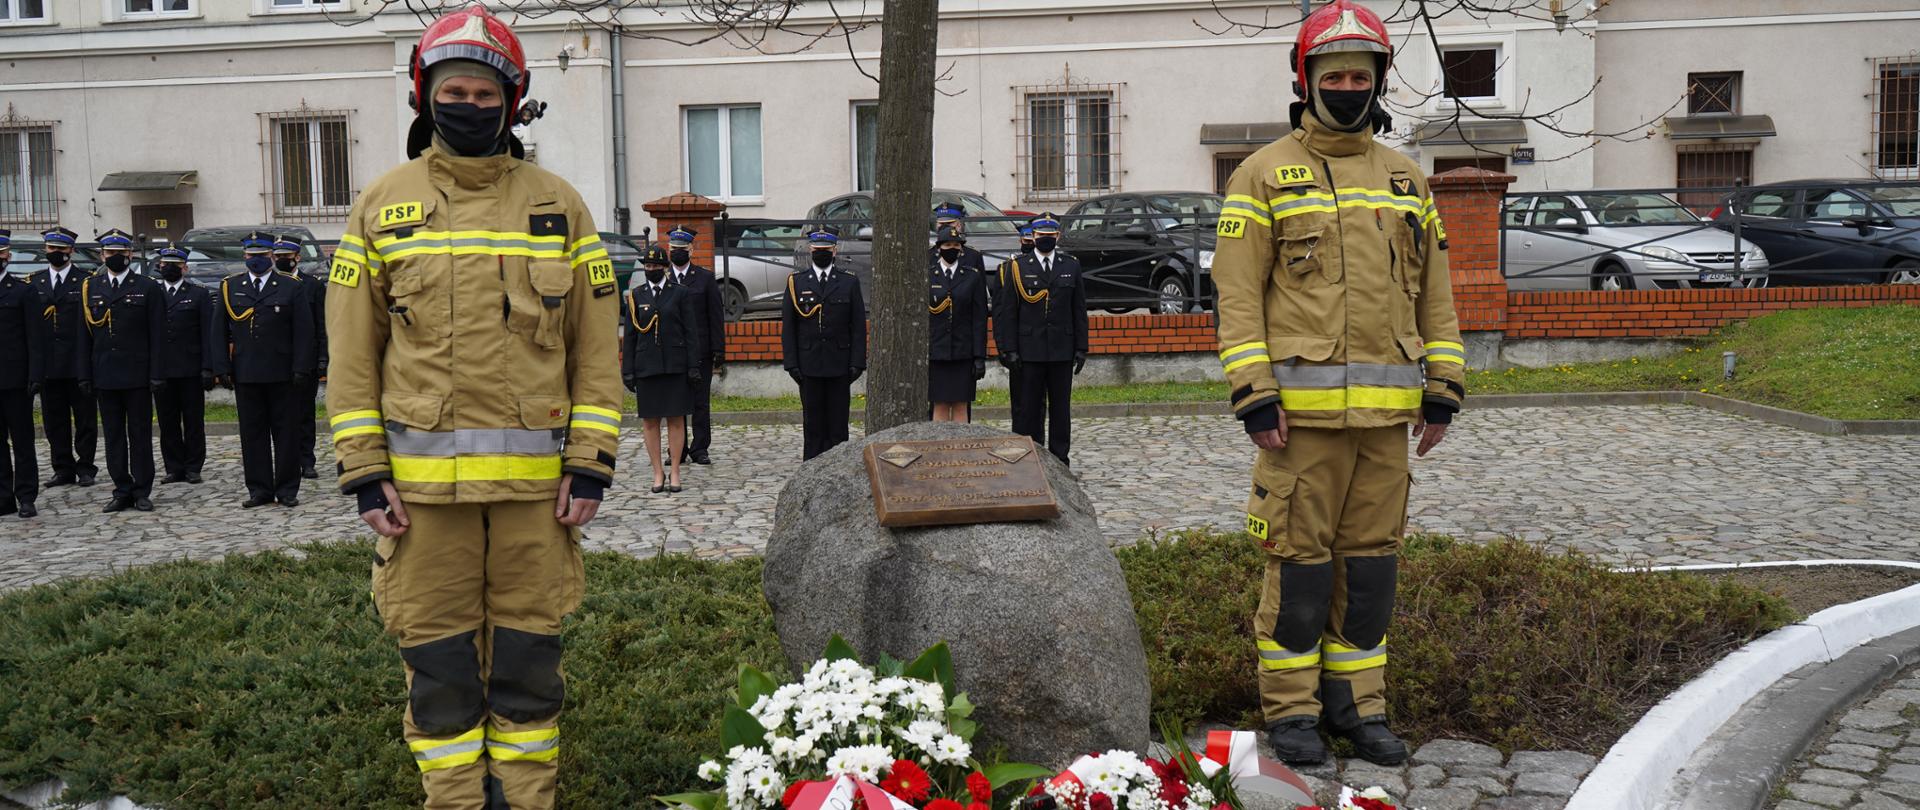 Przed kamieniem - pomnikiem stoi dwóch strażaków w ubraniach specjalnych, przed kamieniem leżą wiązanki z kwiatami oraz znicz. W tle kadra keirownicza strażaków